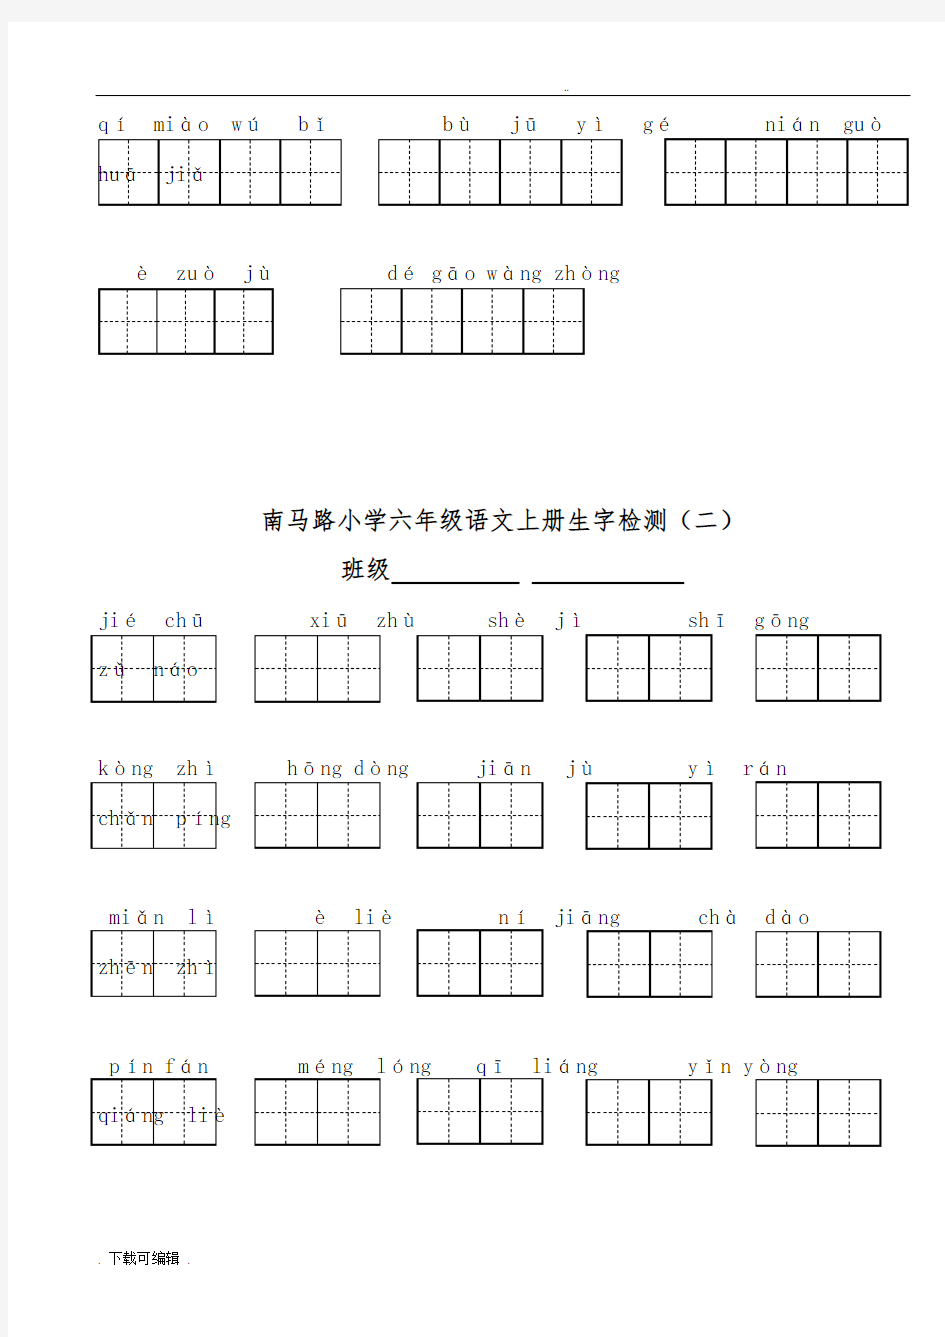 人教版六年级语文(上册)看拼音写汉字所有词语田字格